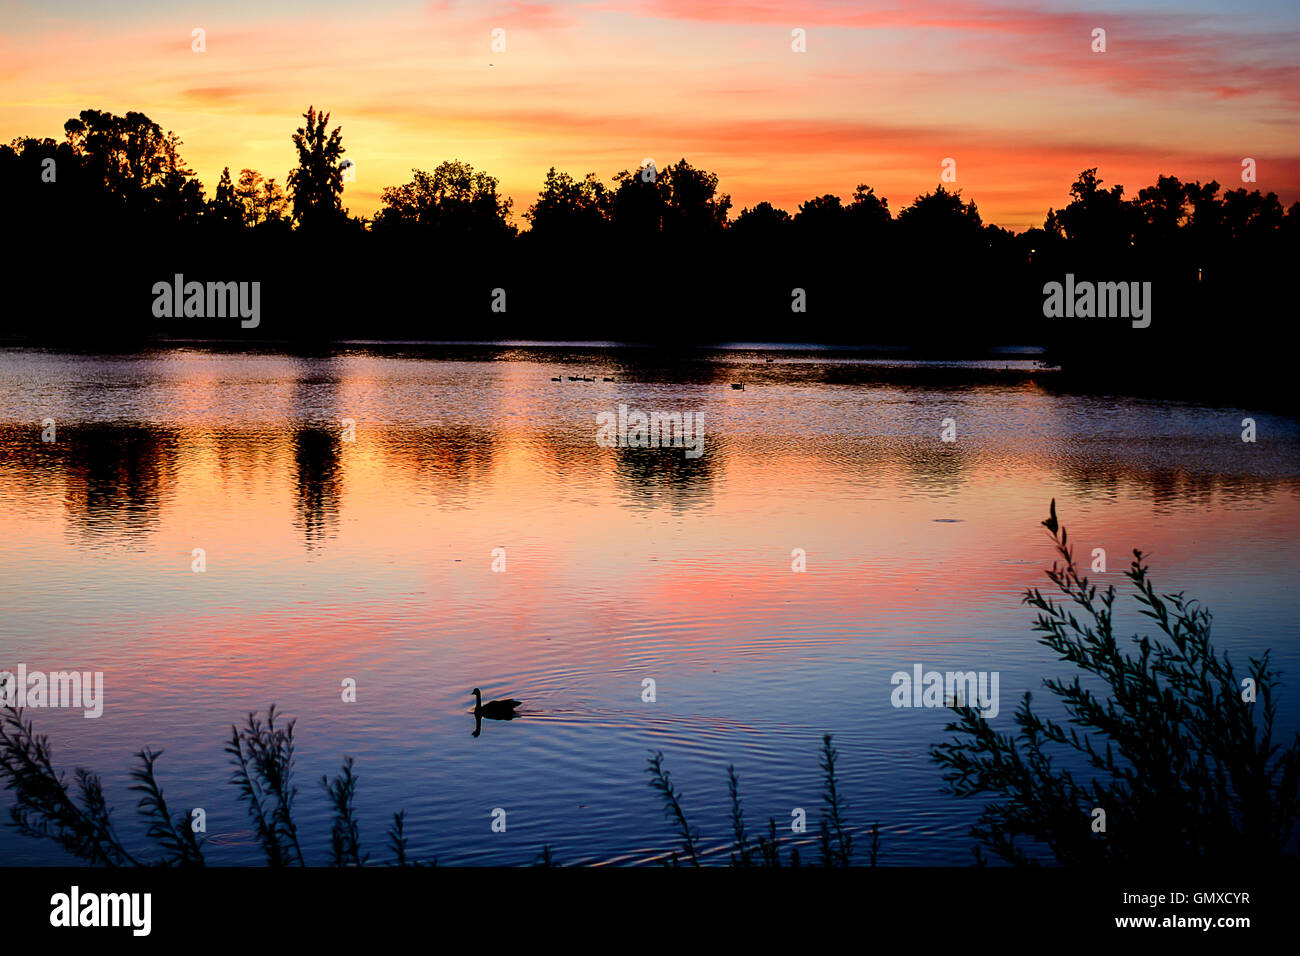 Lac de soleil colorés avec réflexion et belle lumière. Grand oiseau nager dans le lac. Banque D'Images